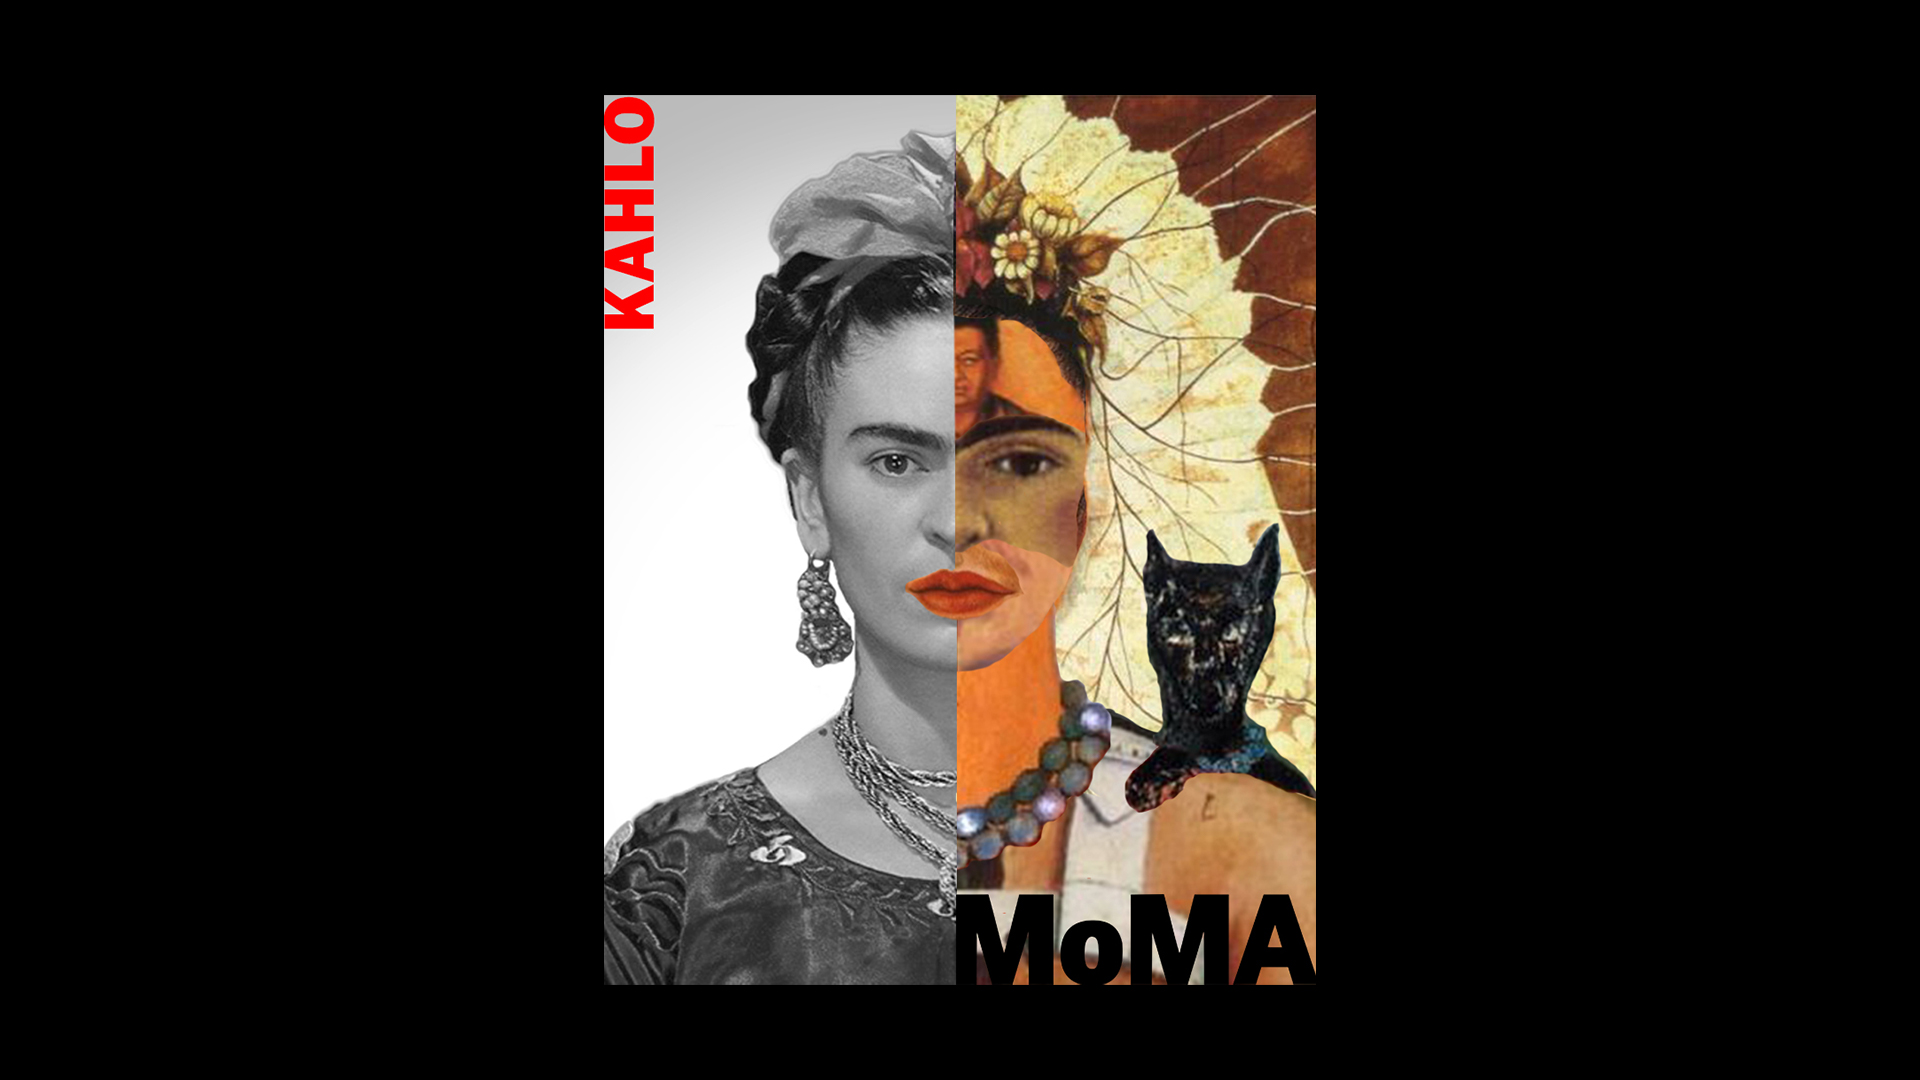 Victoria Holod Work: Portrait of Frida Kahlo